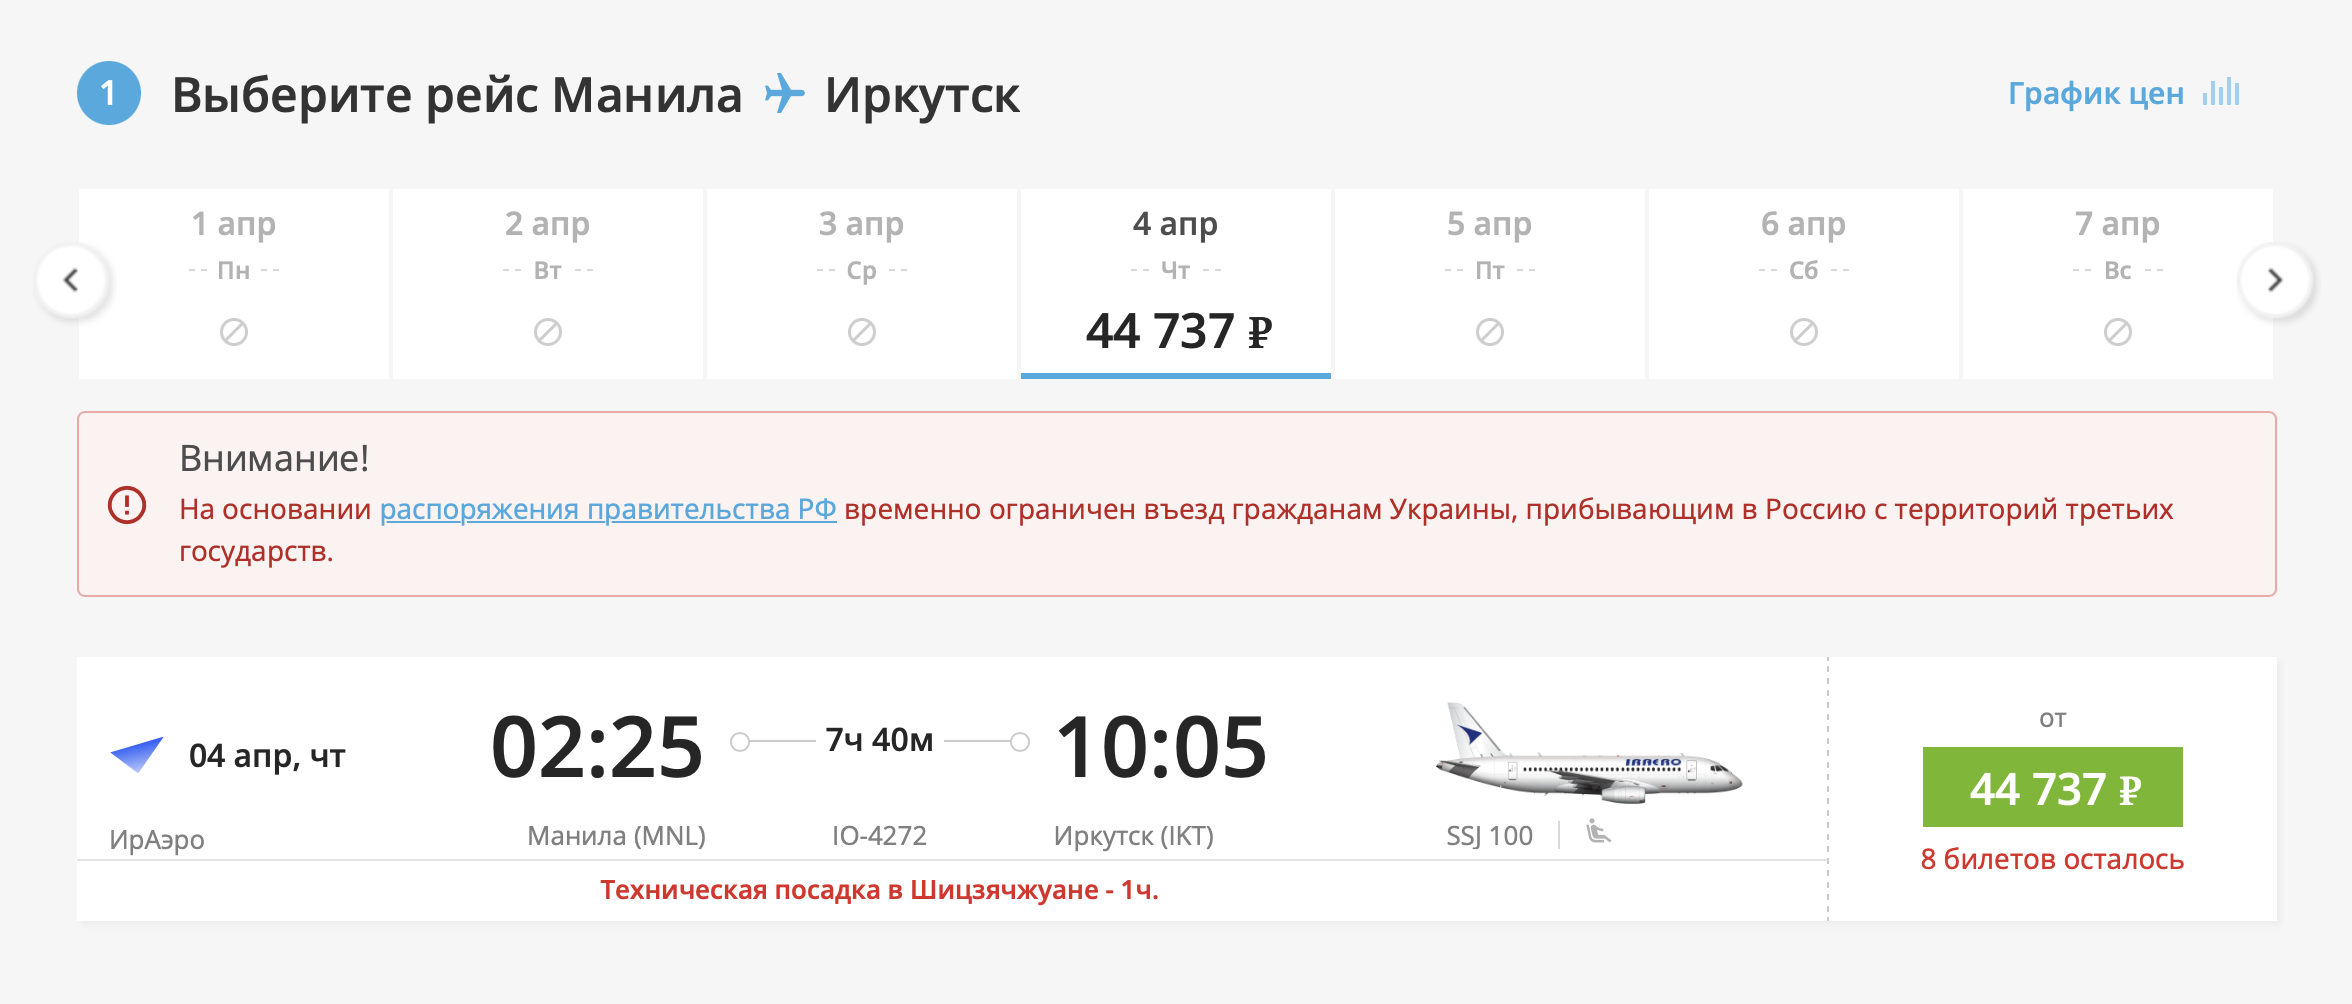 В апреле будут вылетать в 02:25. Источник: iraero.ru